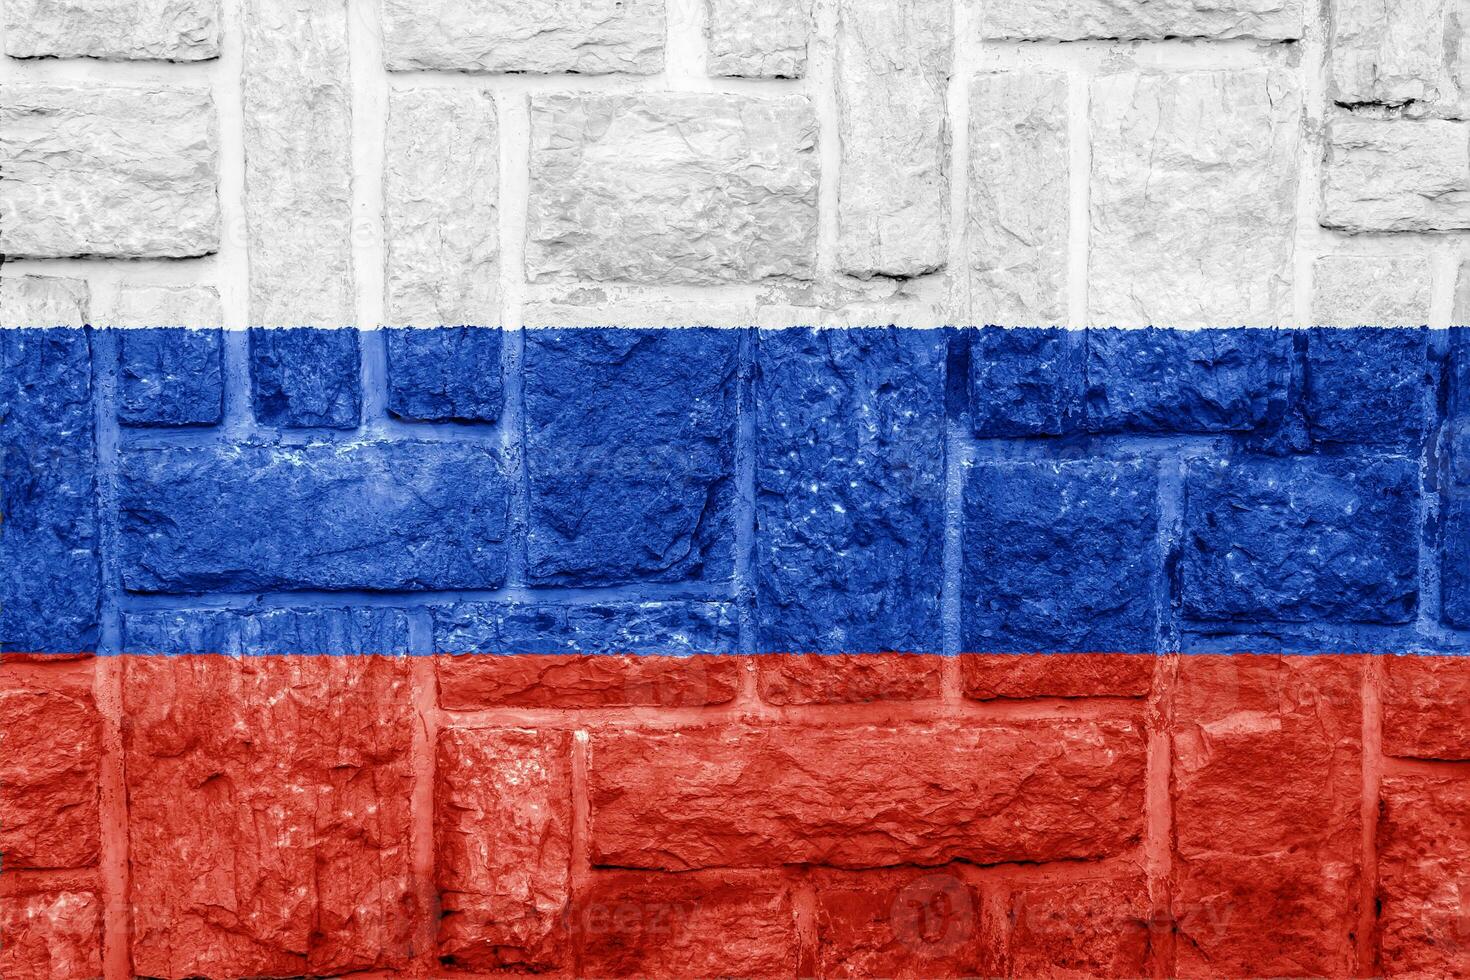 drapeau de russe fédération sur une texturé Contexte. concept collage. photo